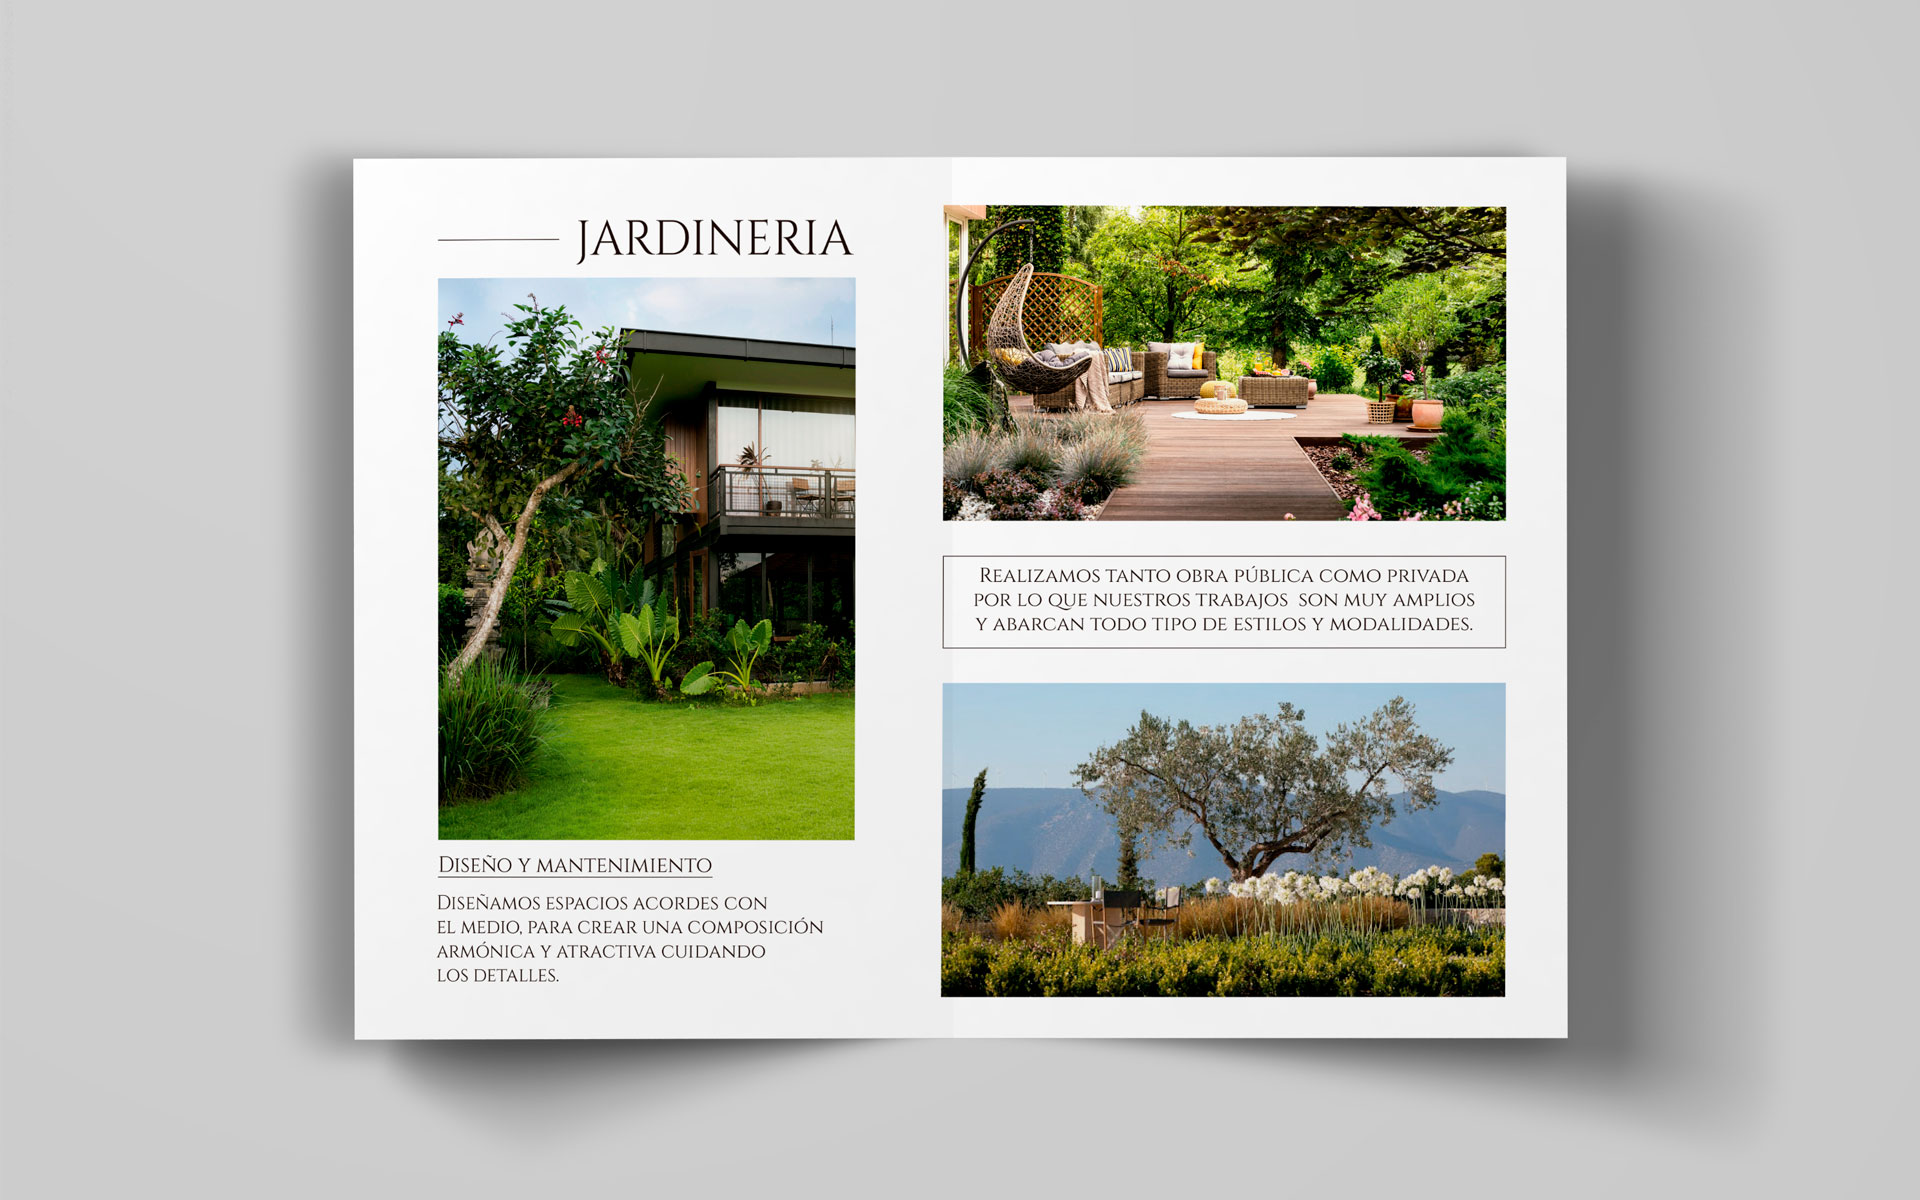 Jardineria Arce, folleto promocional